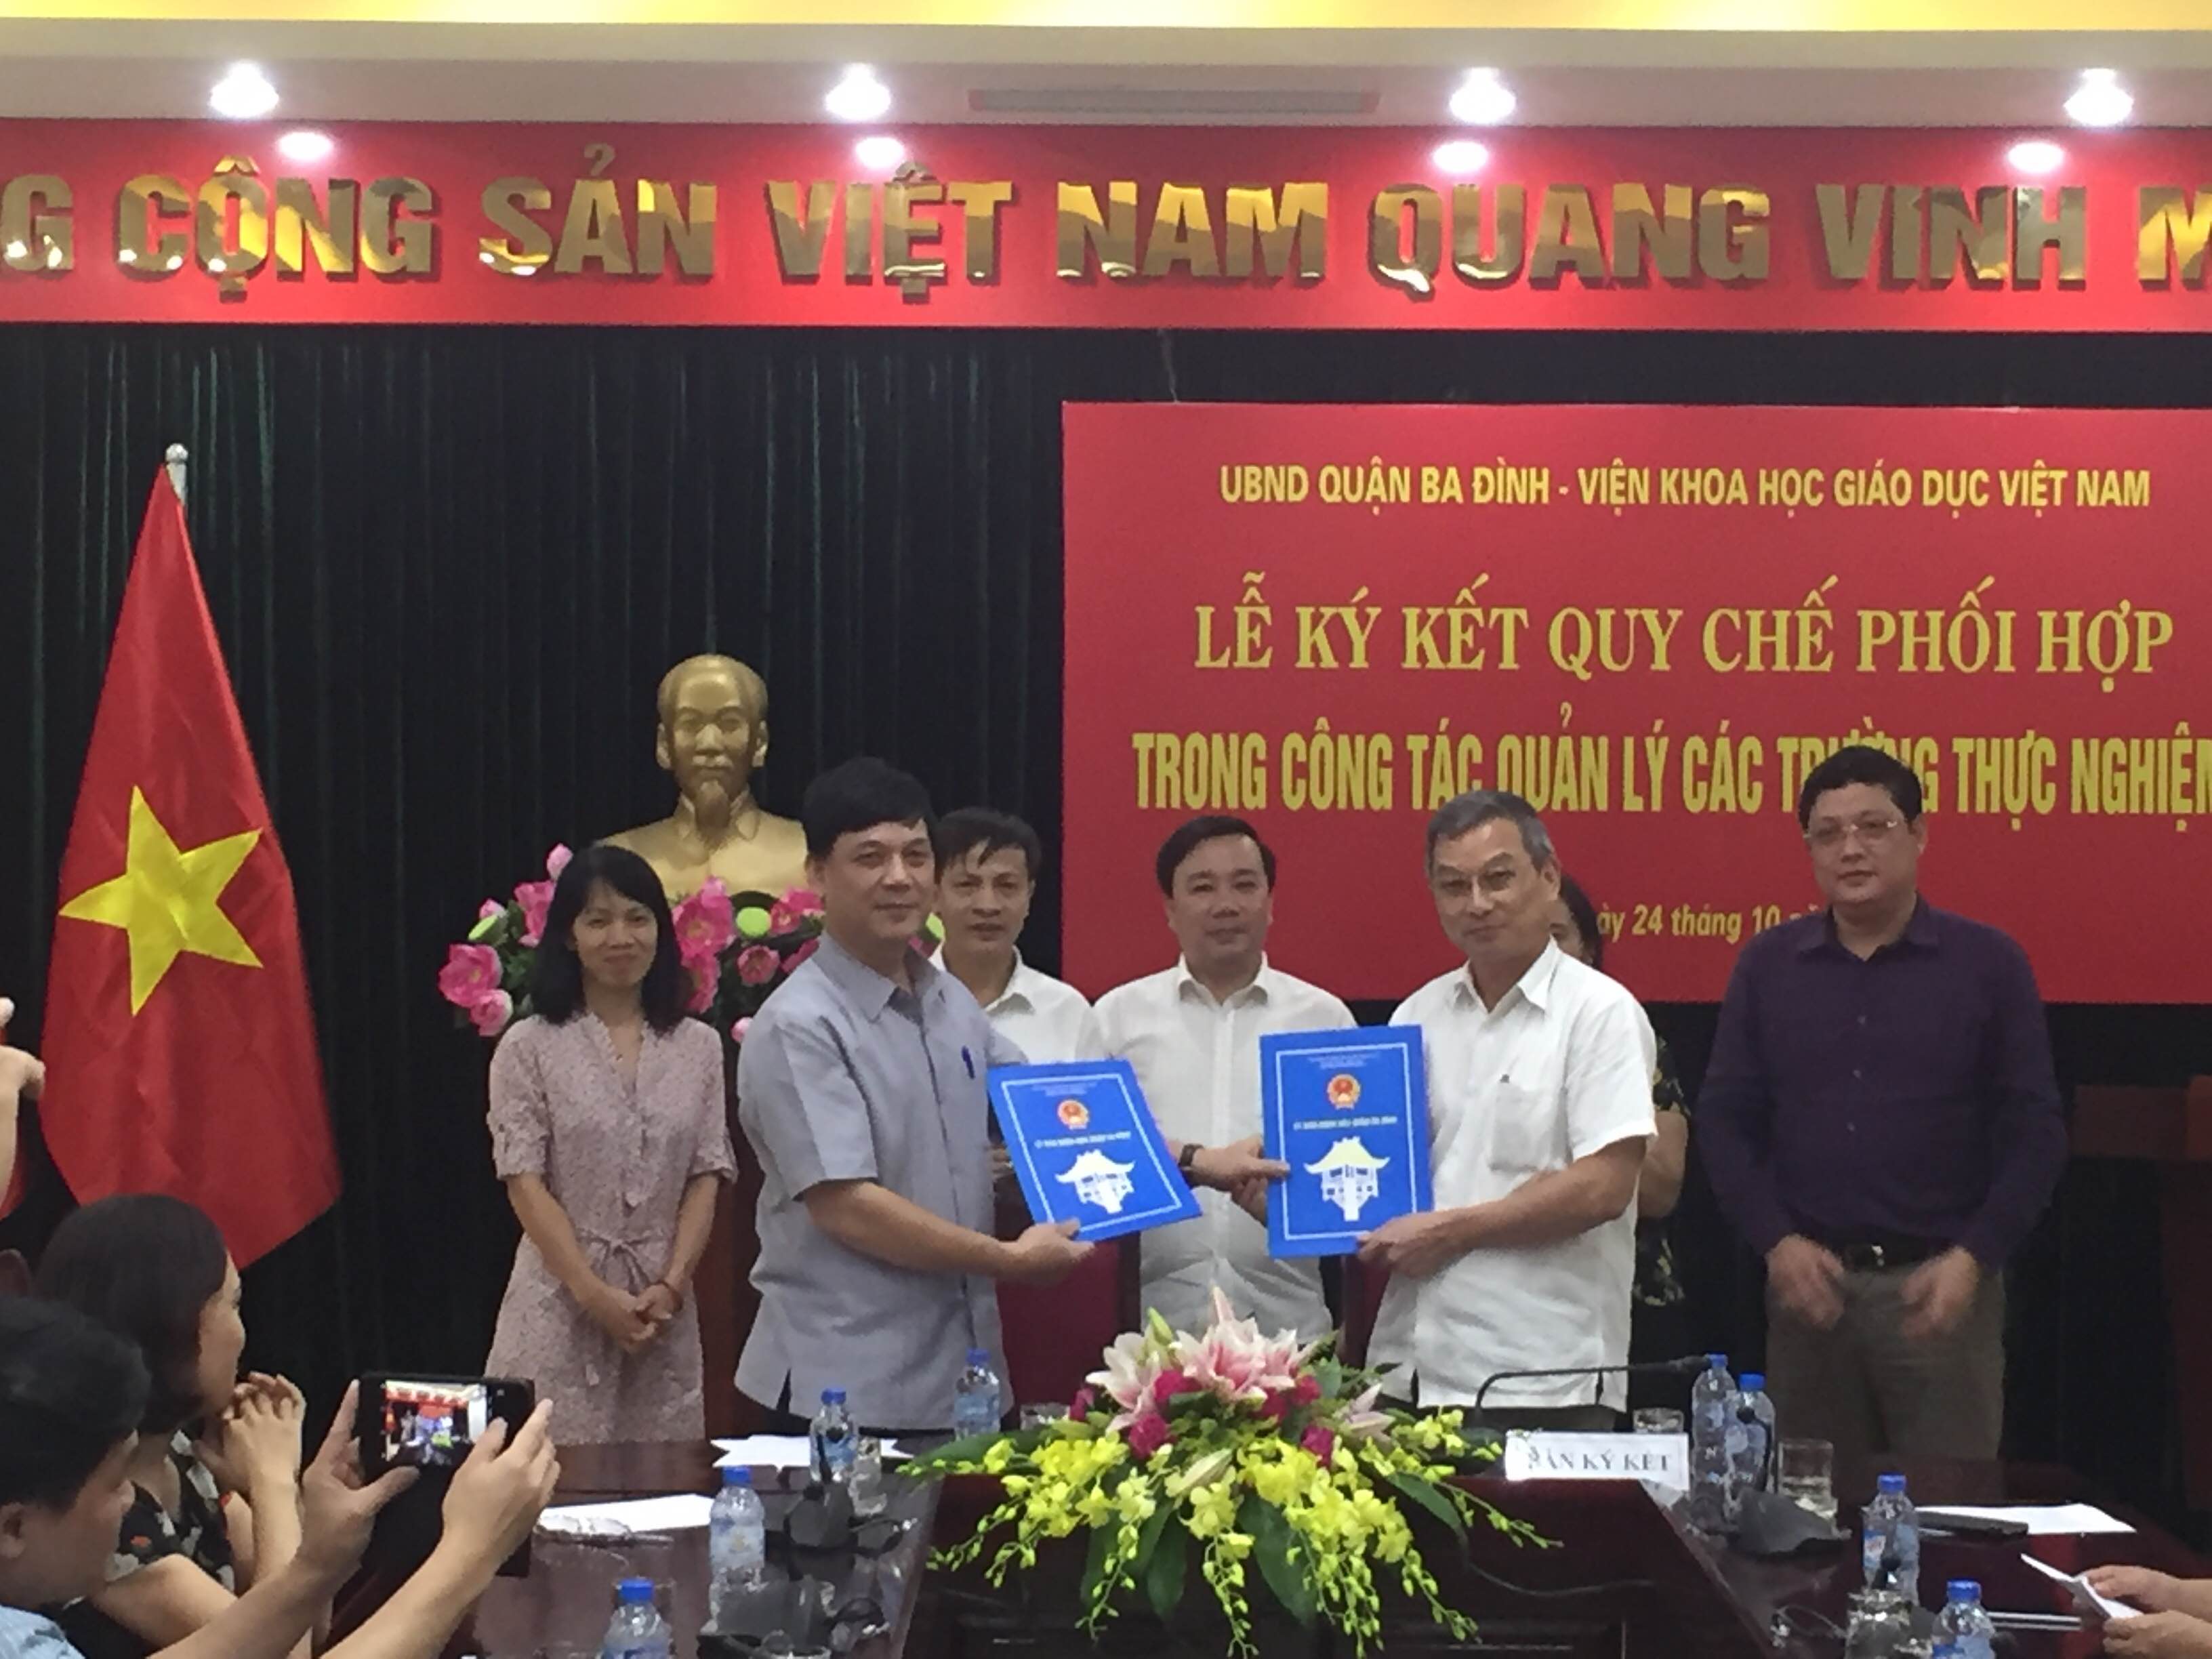 Lễ ký kết Quy chế phối hợp trong công tác quản lý các trường thực nghiệm giữa Viện Khoa học Giáo dục Việt Nam và Ủy Ban Nhân dân quận Ba Đình